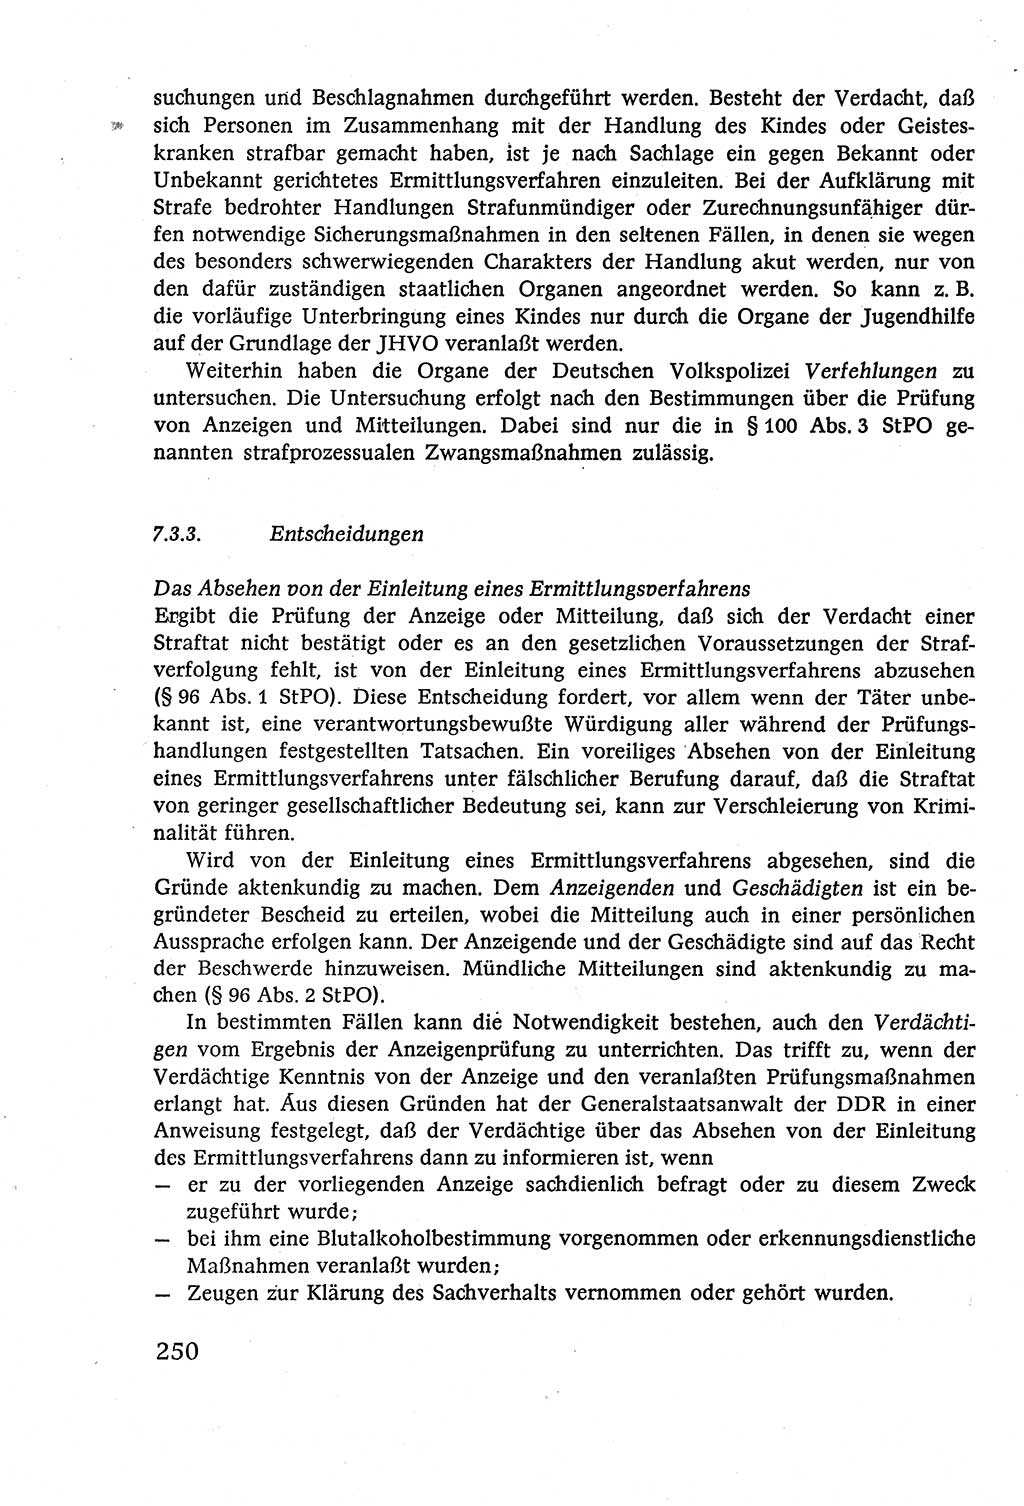 Strafverfahrensrecht [Deutsche Demokratische Republik (DDR)], Lehrbuch 1977, Seite 250 (Strafverf.-R. DDR Lb. 1977, S. 250)